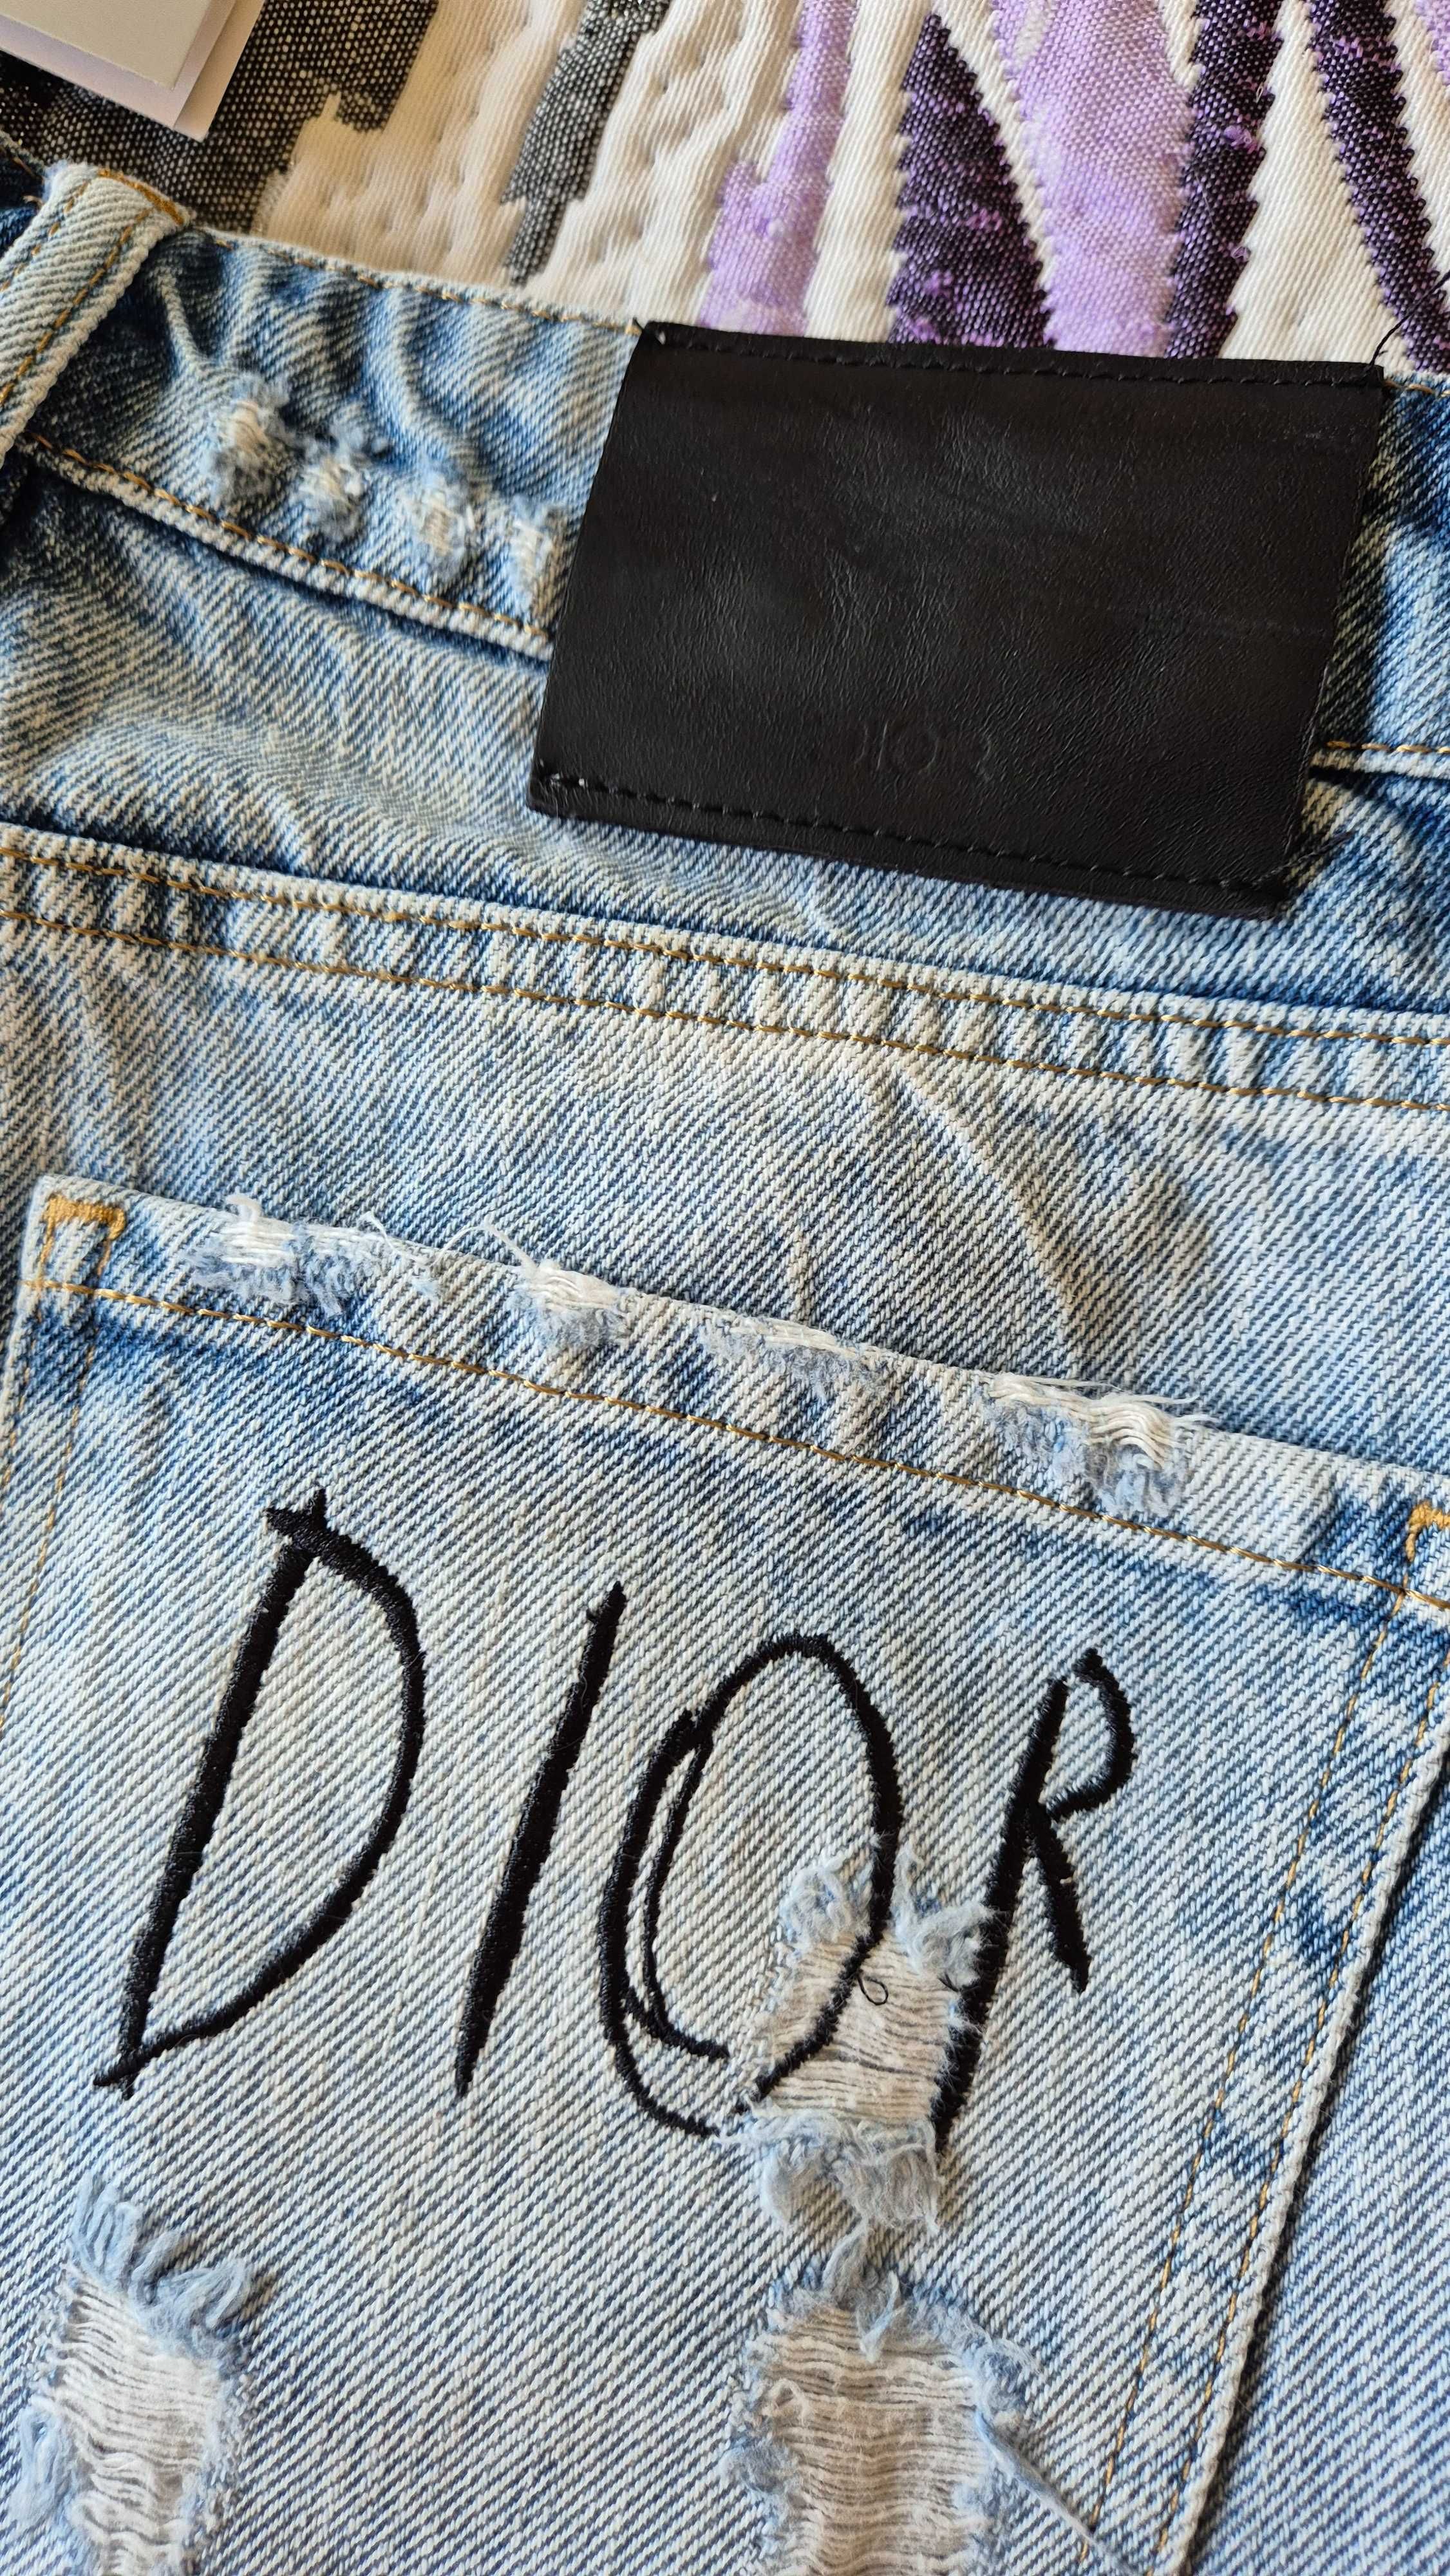 Szorty, krótkie spodenki Dior, rozmiar S, 27